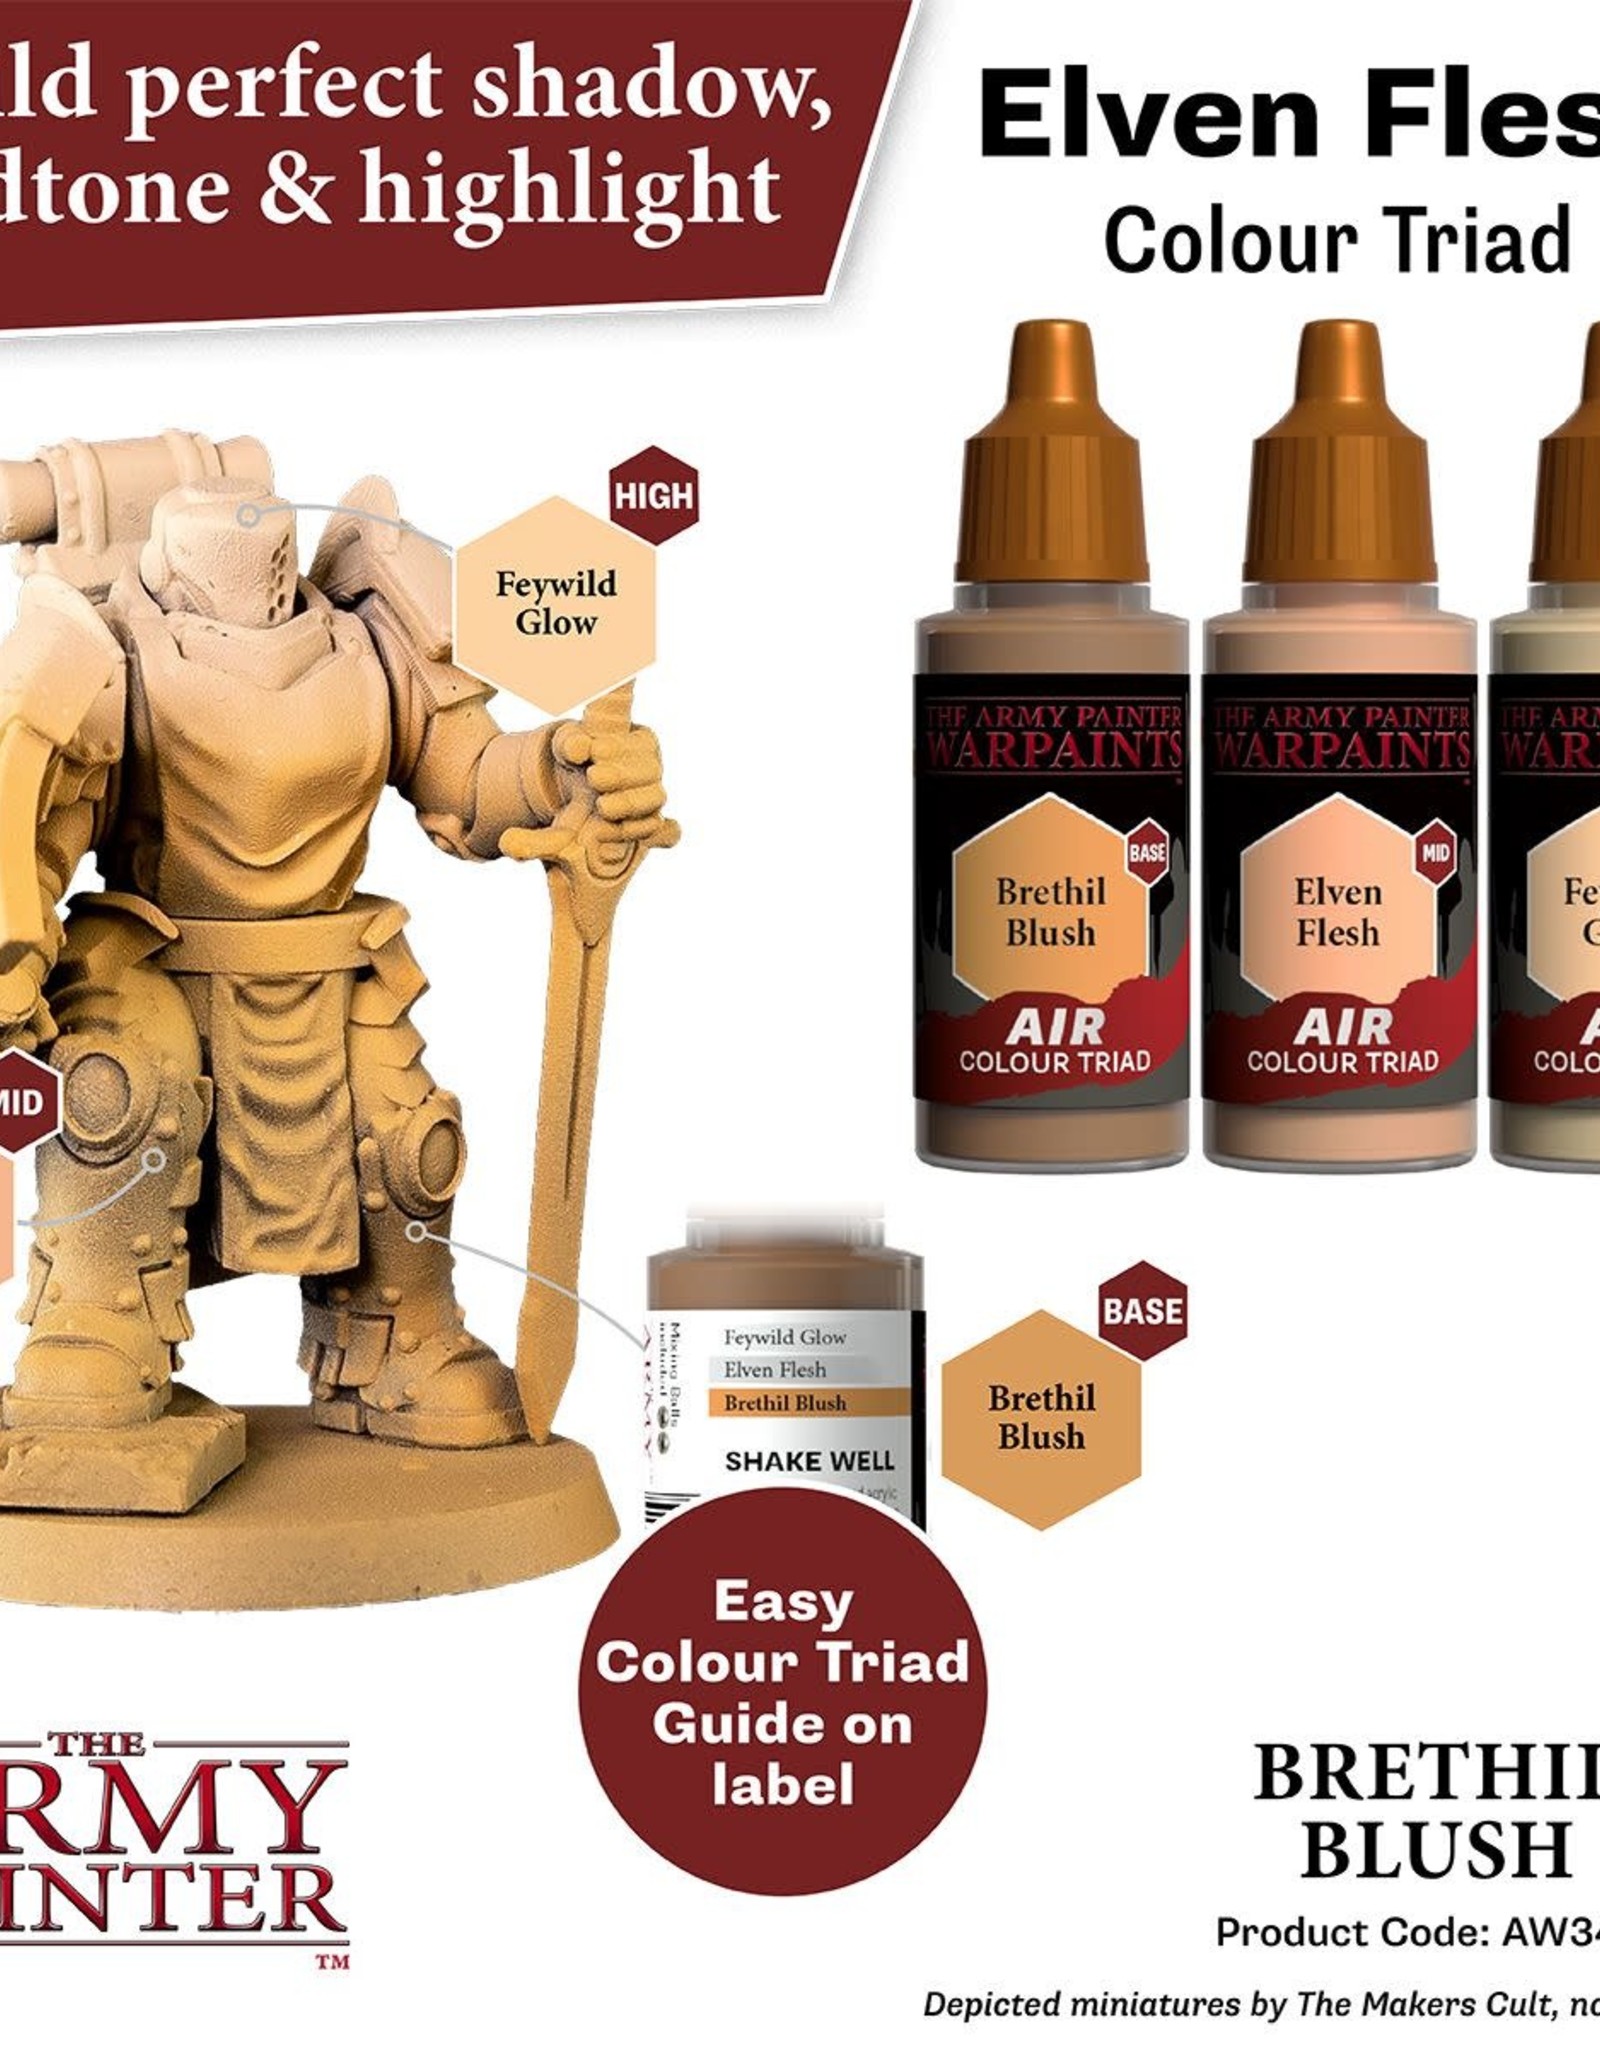 The Army Painter Warpaint Air: Brethil Blush (18ml)